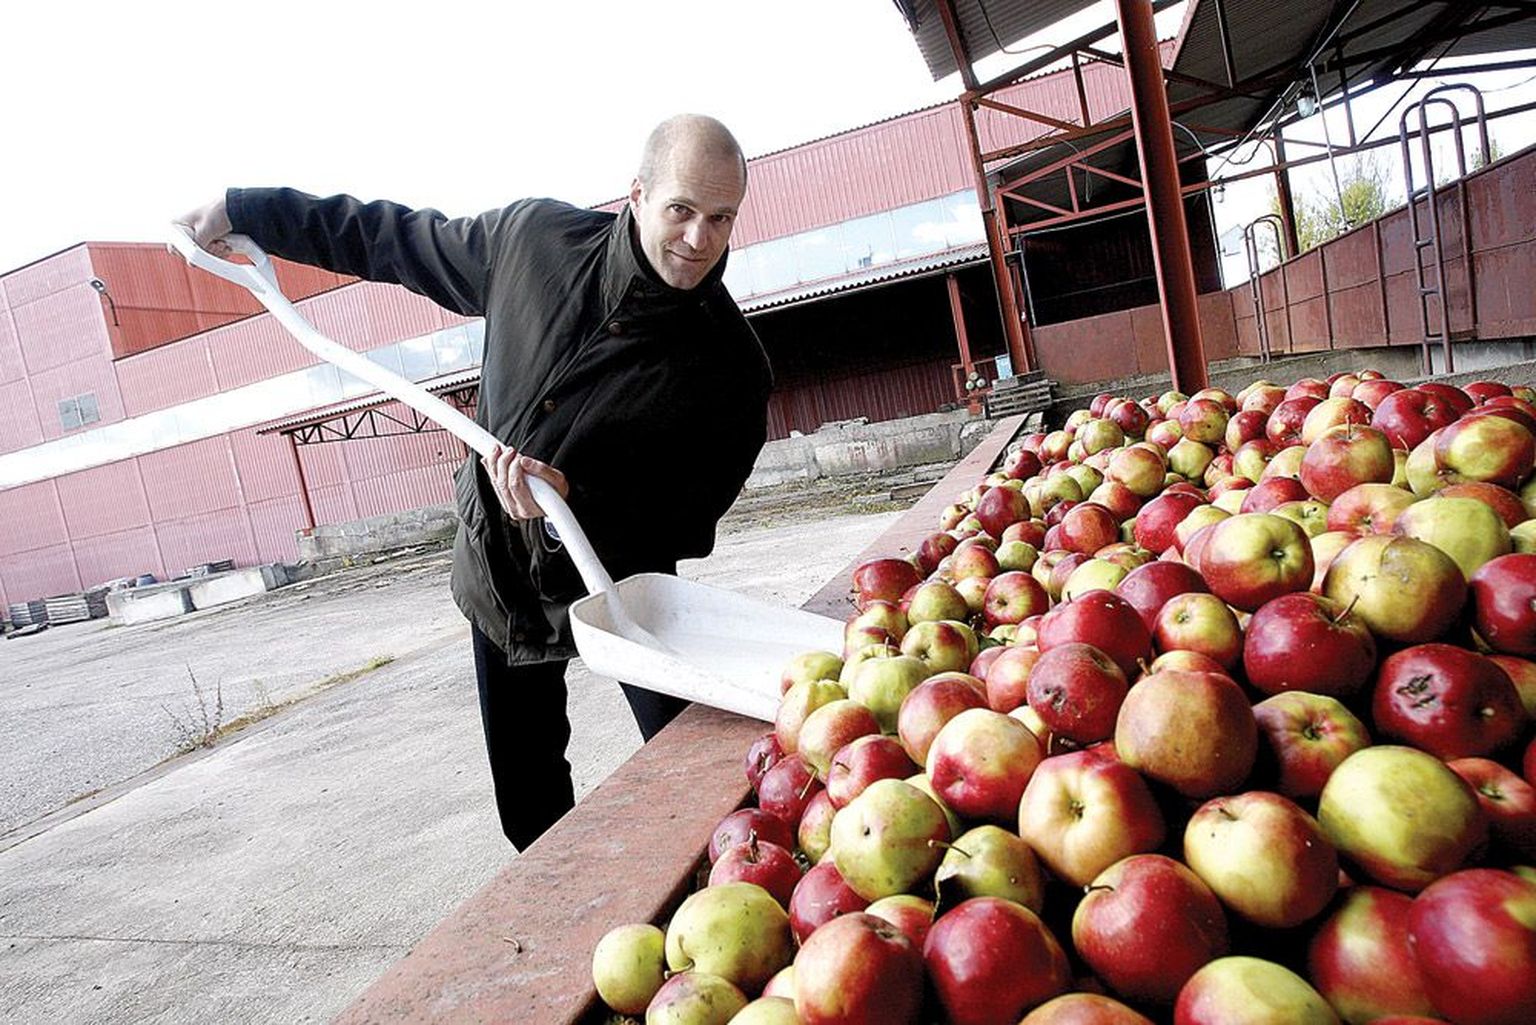 Põltsamaa Felixi turundusdirektor Marek Viilol uuris Leedust ostetud õunu lähemalt ja oli nendega rahul. «Tahtsime tööstusõuna, aga saime ilusa ja korraliku kauba, millest saab mõnusalt magusa mahla,» rõõmustas ta.